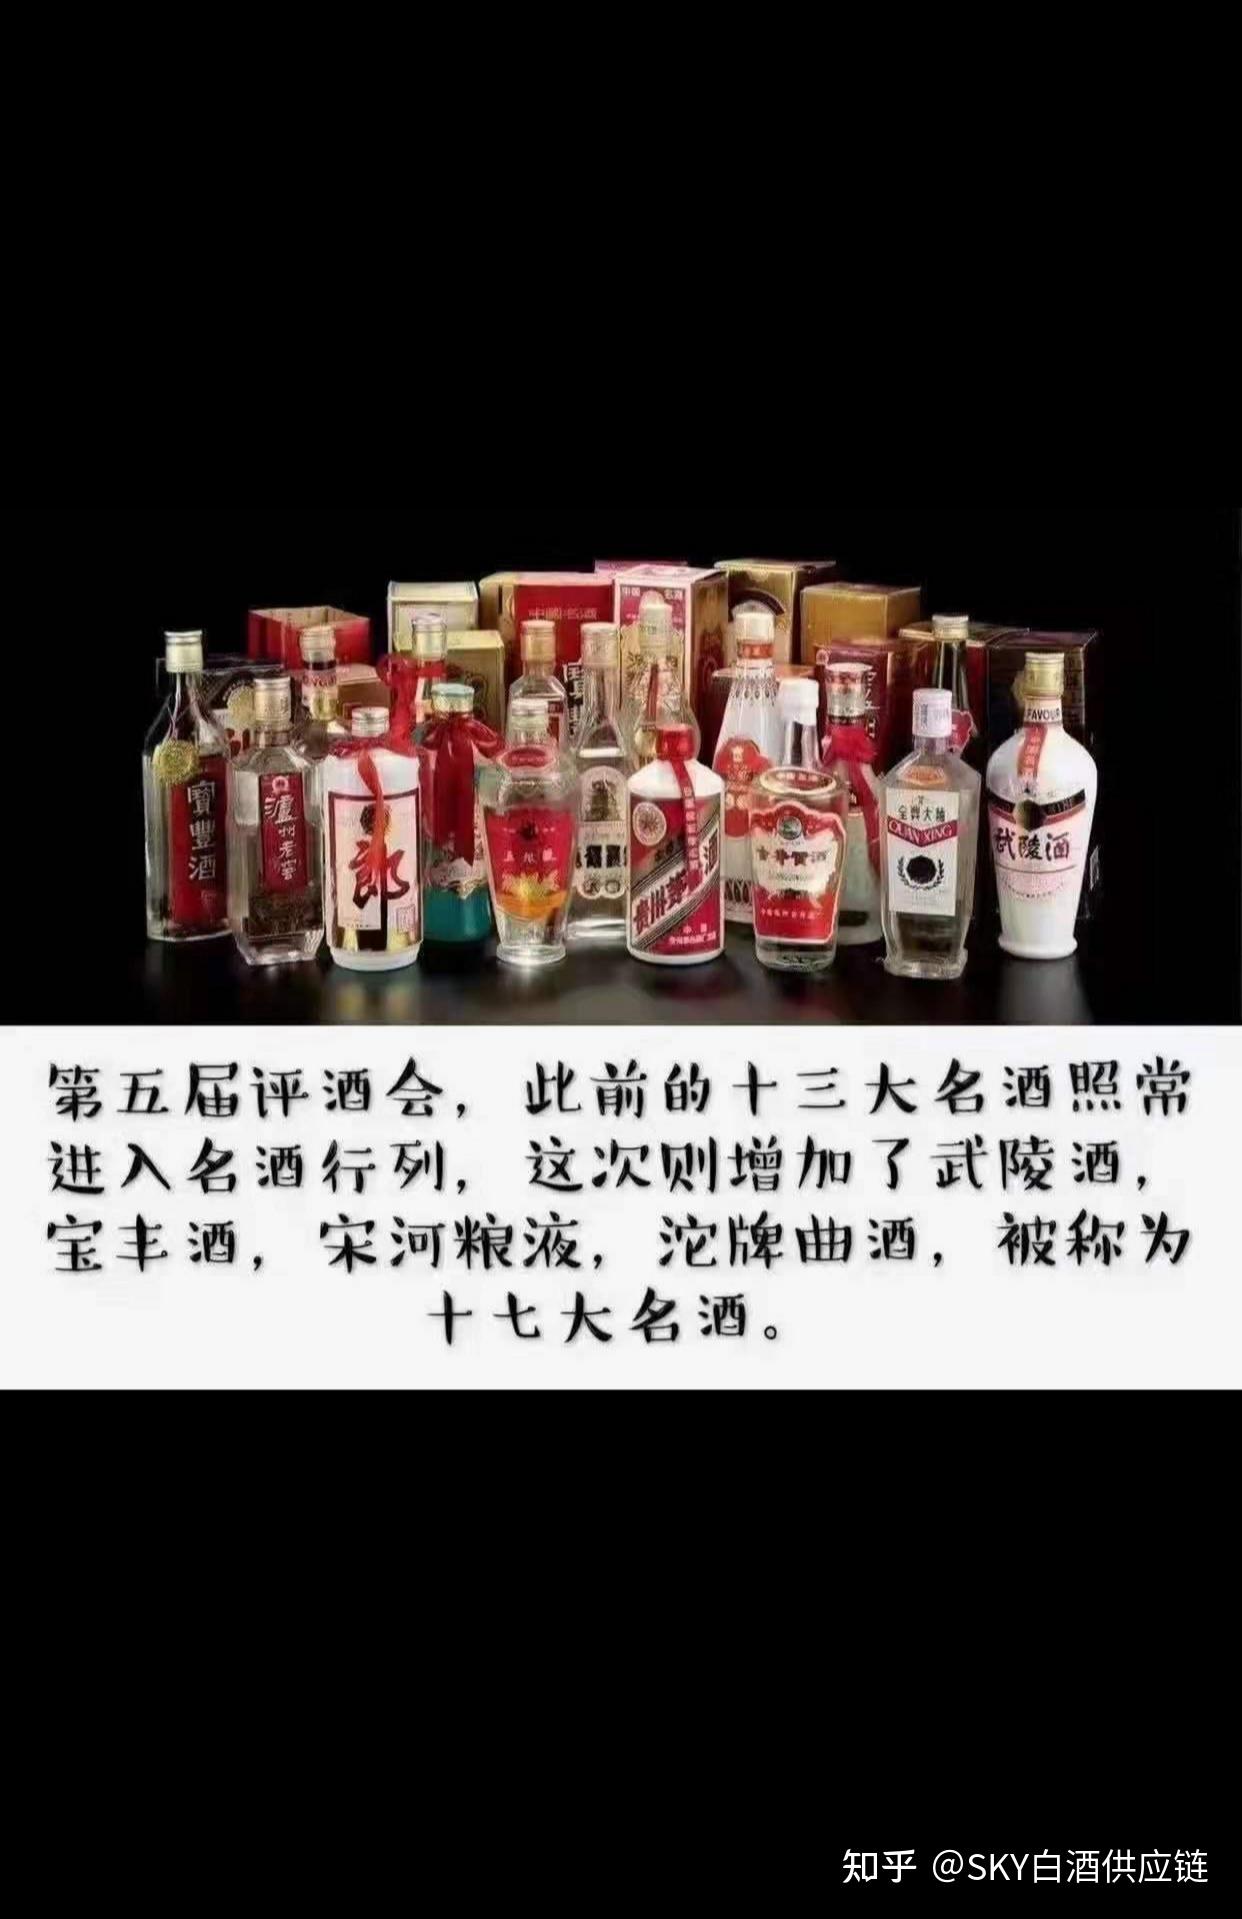 中国四大名酒老八大名酒新八大名酒十三大名酒和十七大名酒